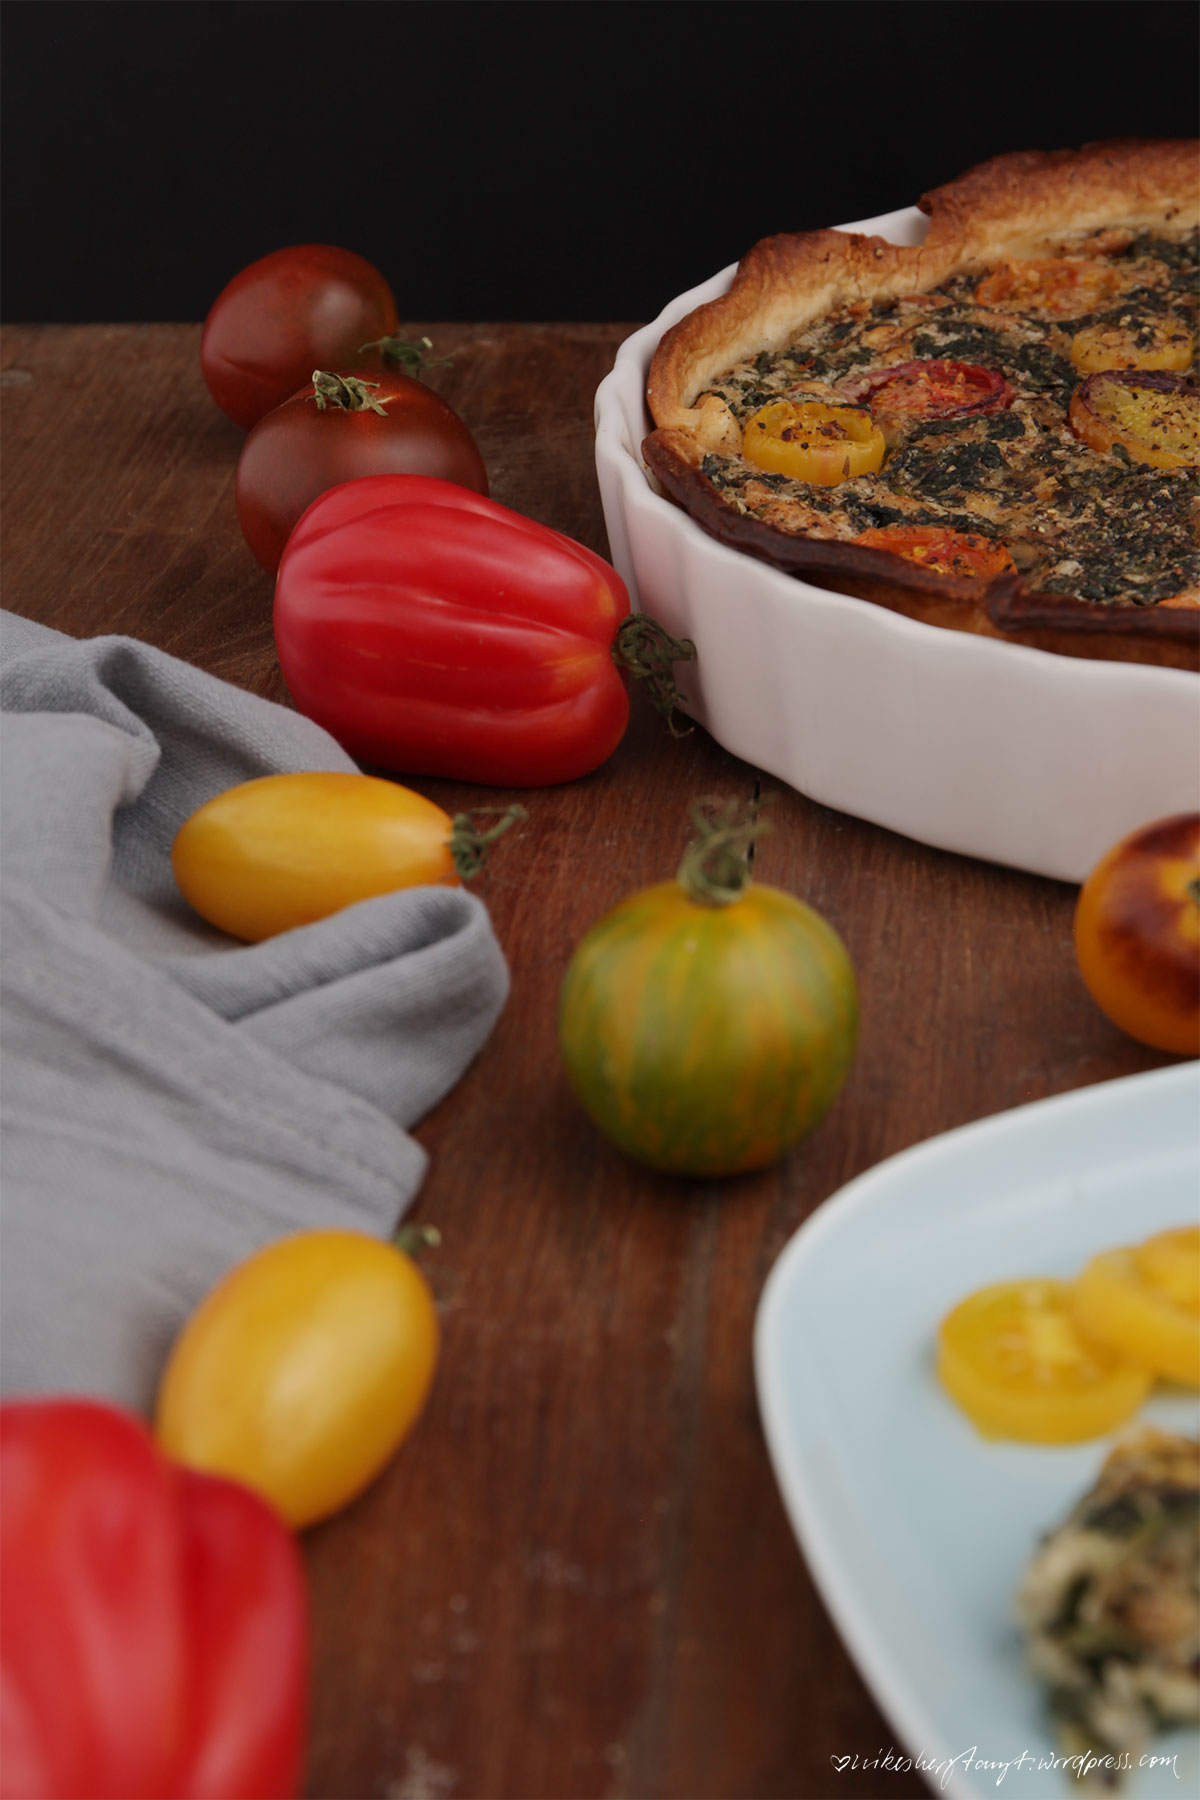 vegane spinat quiche mit pinienkernen und bunten tomaten in weißer form auf holz, nikesherztanzt